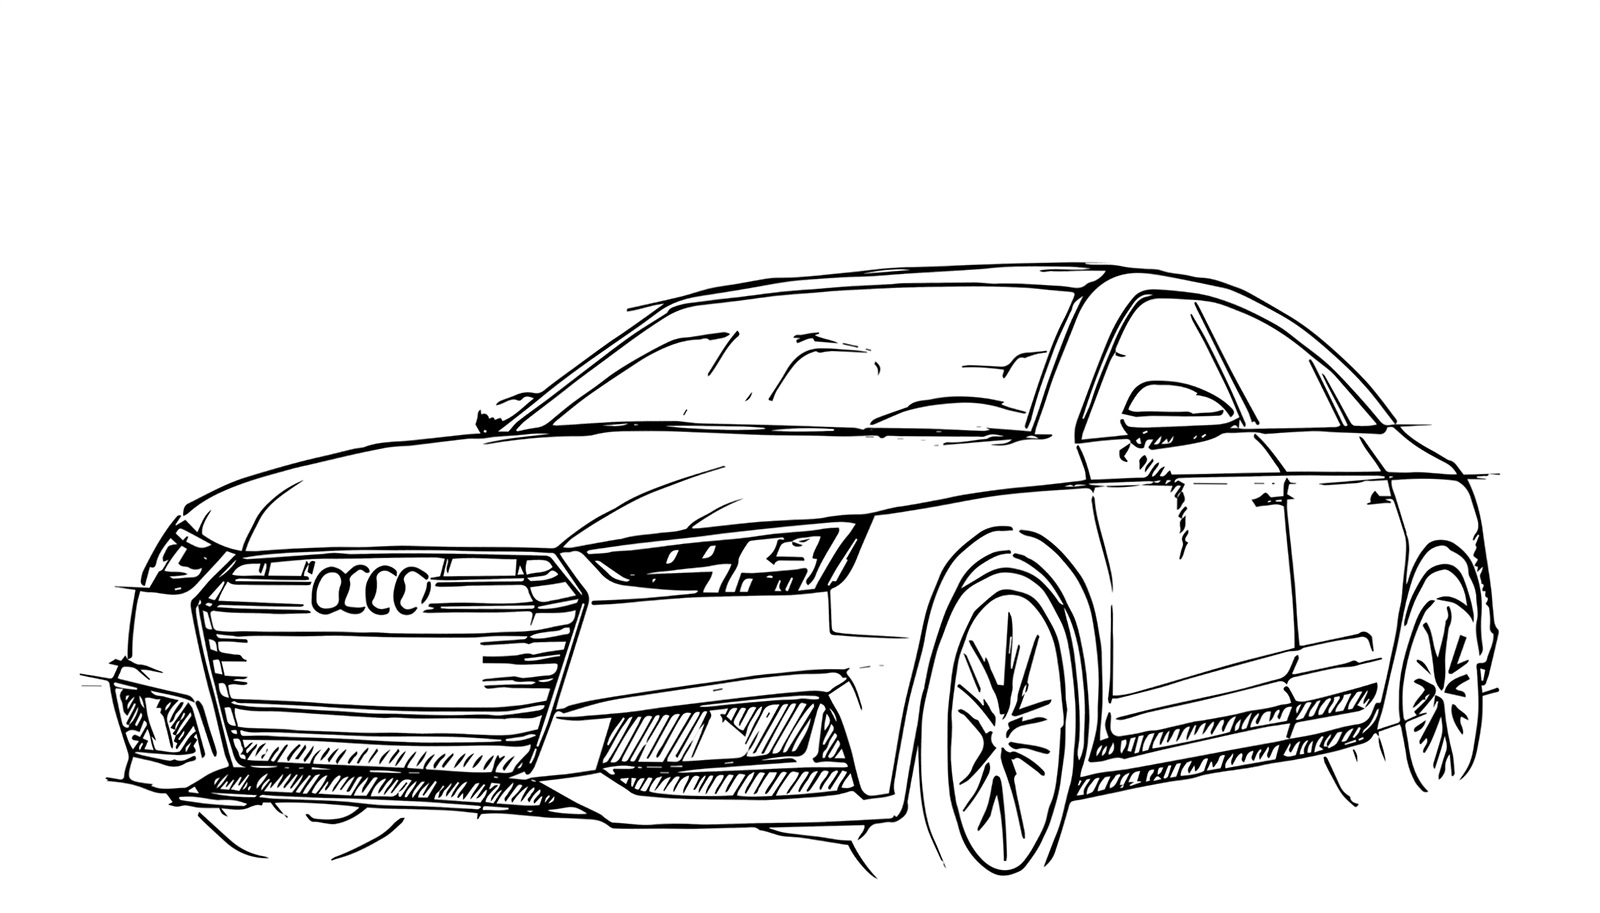 Раскраска Audi rs6